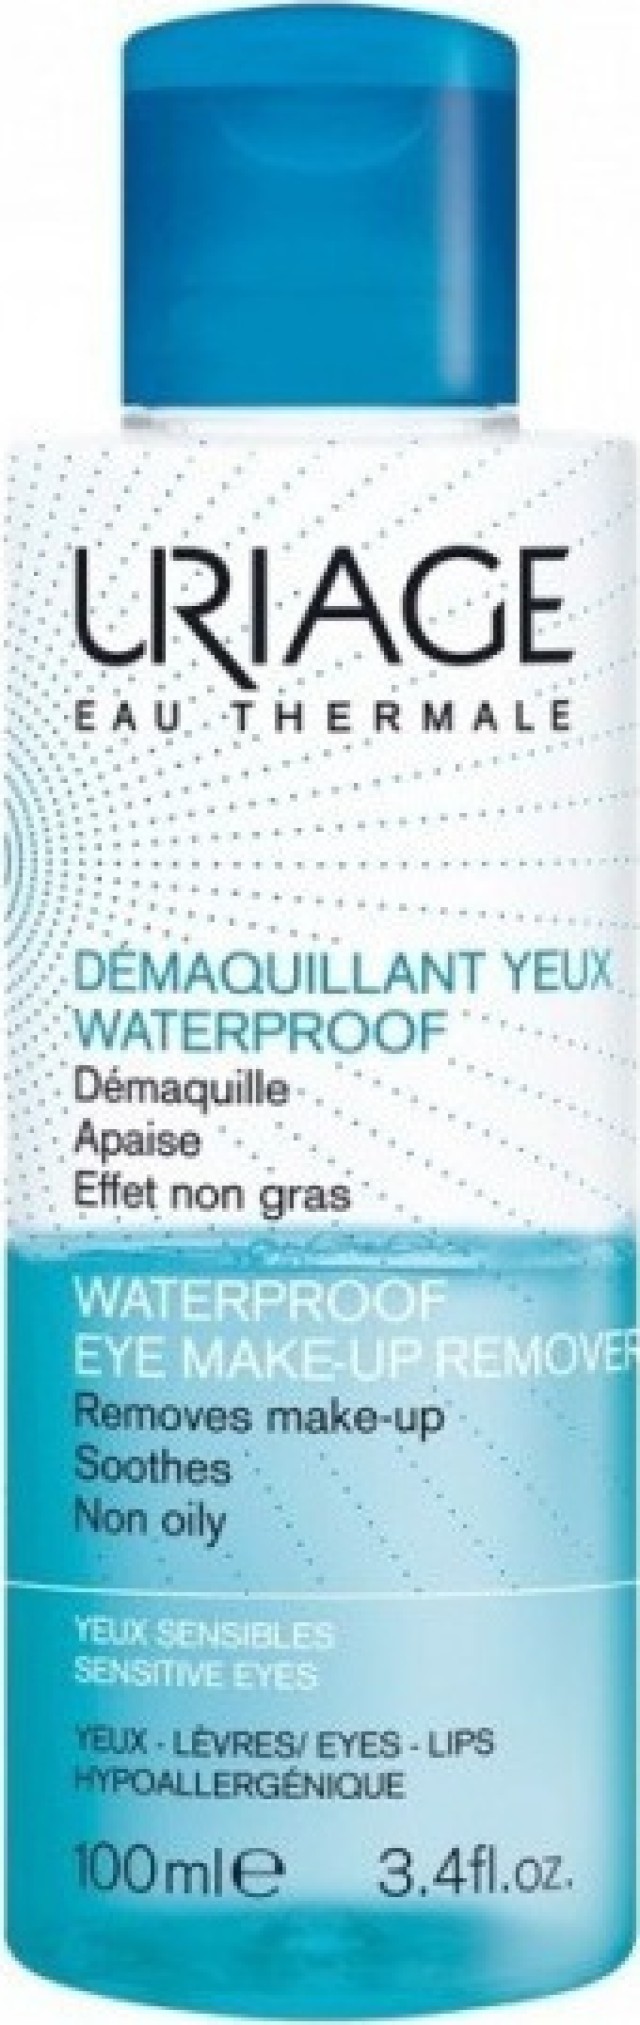 Uriage Demaquillant Yeux Waterproof 100ml